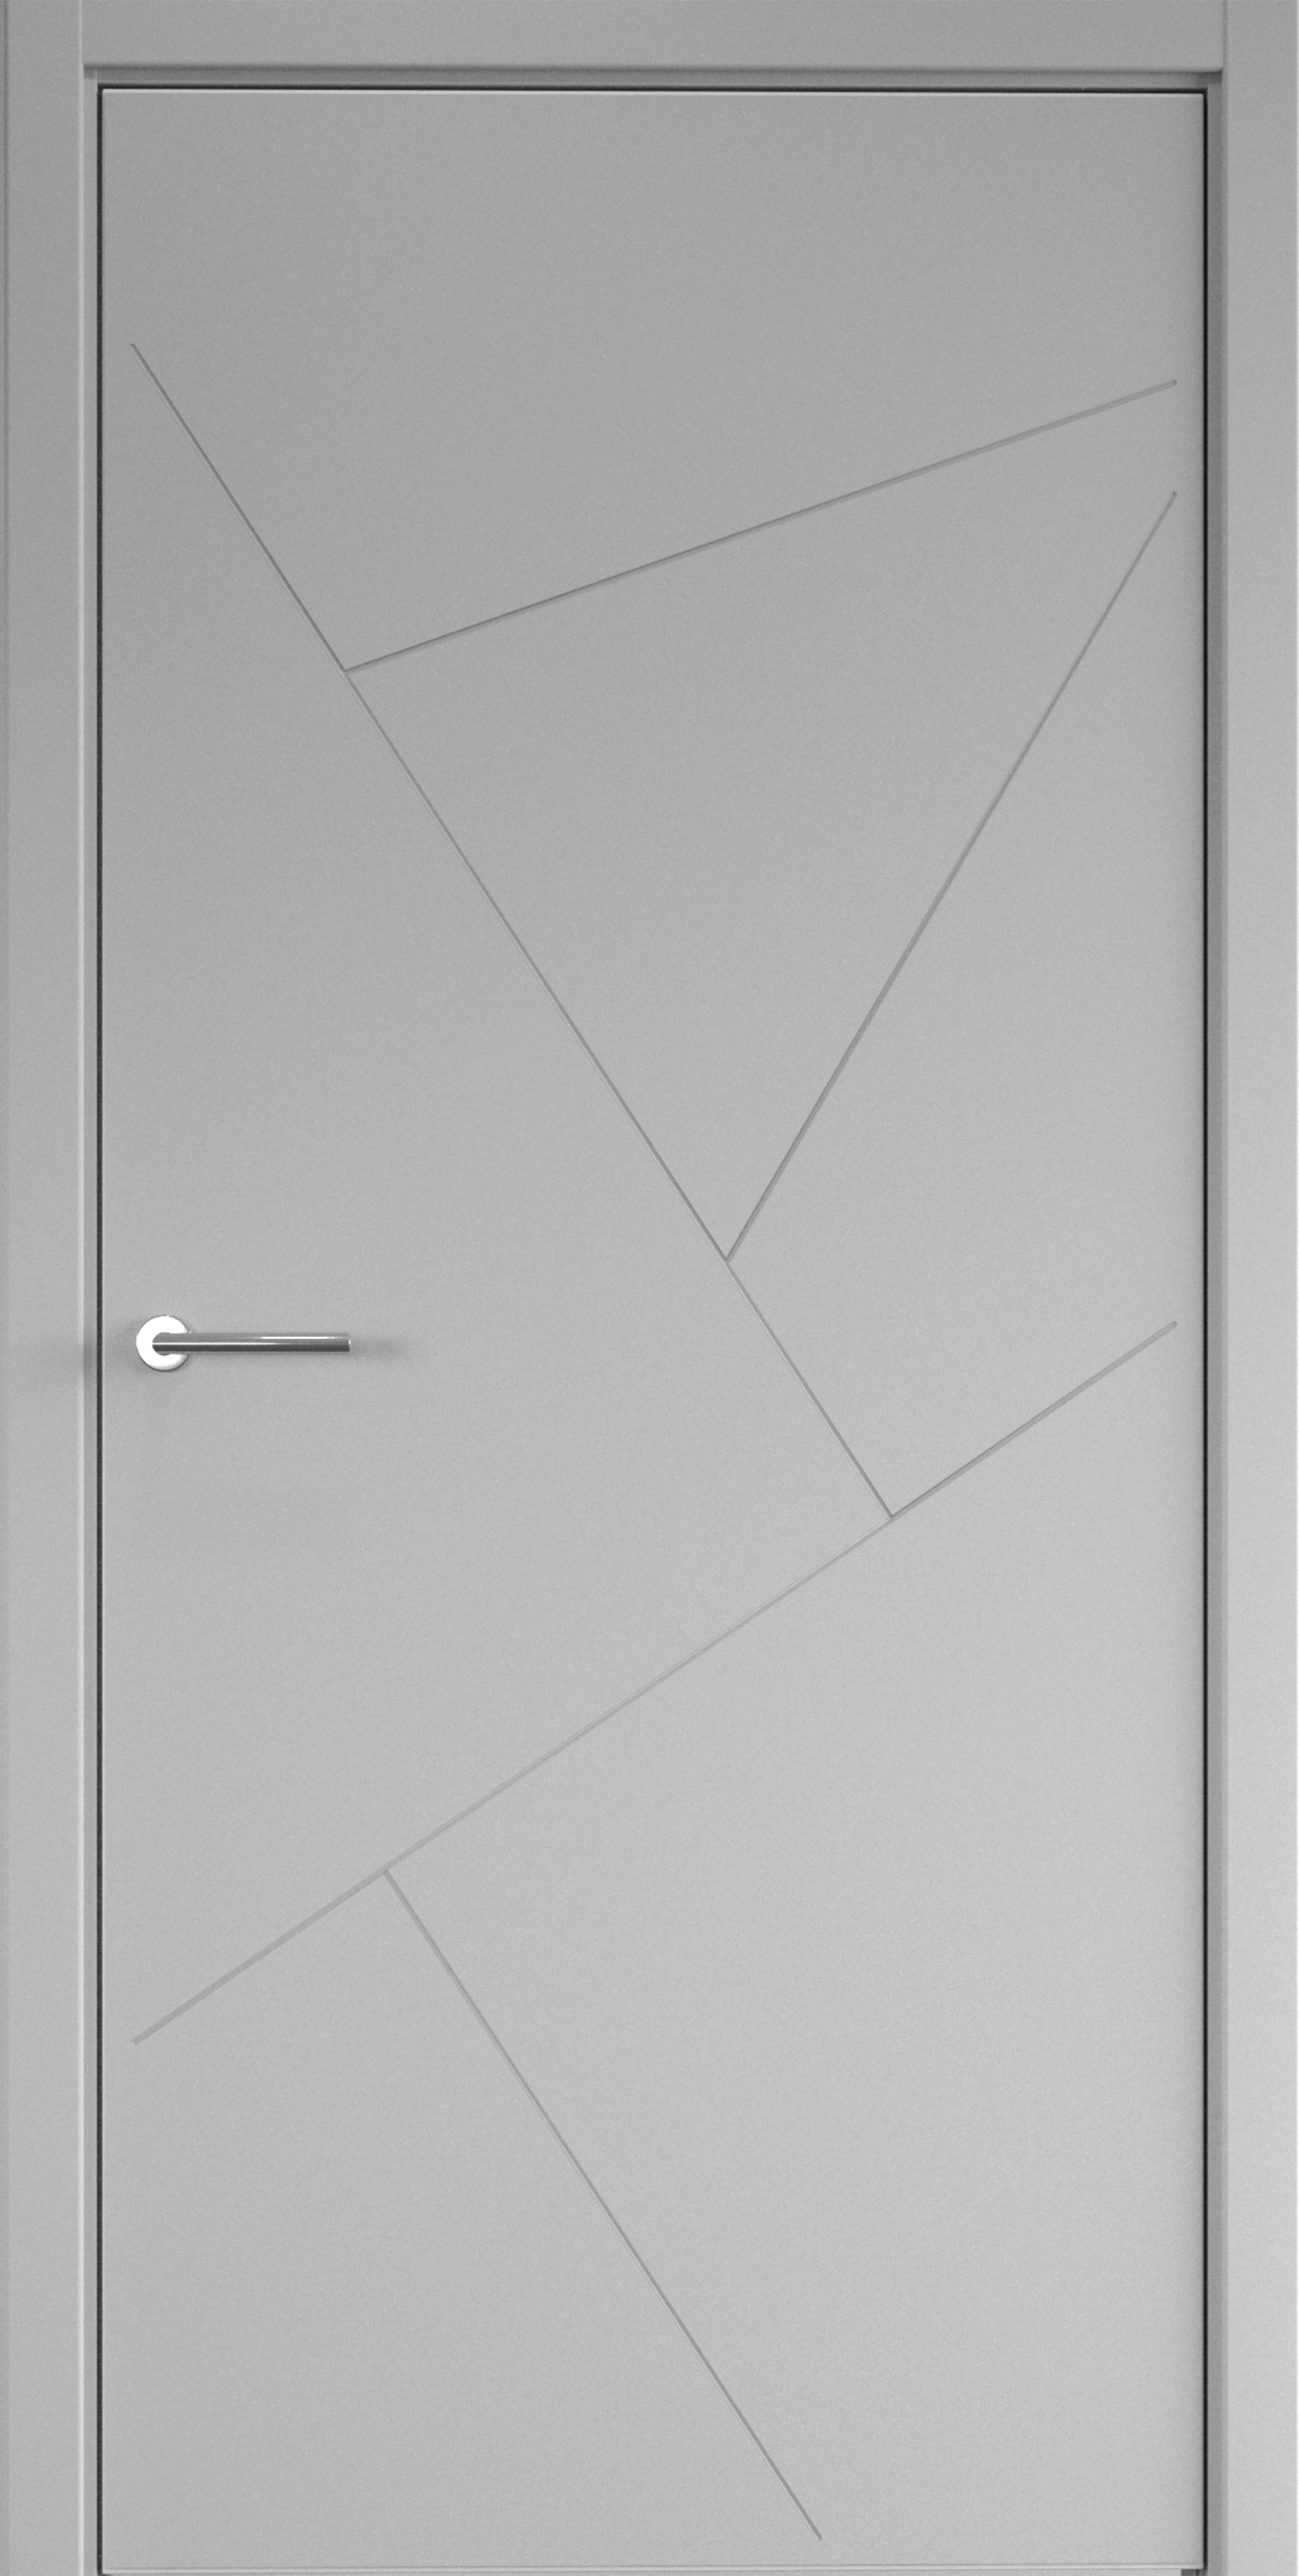 Полотно дверное глухое СХЕМА Эмаль-1 ПГ Эмаль Геометрия-2 800 серый (защелка маг.)